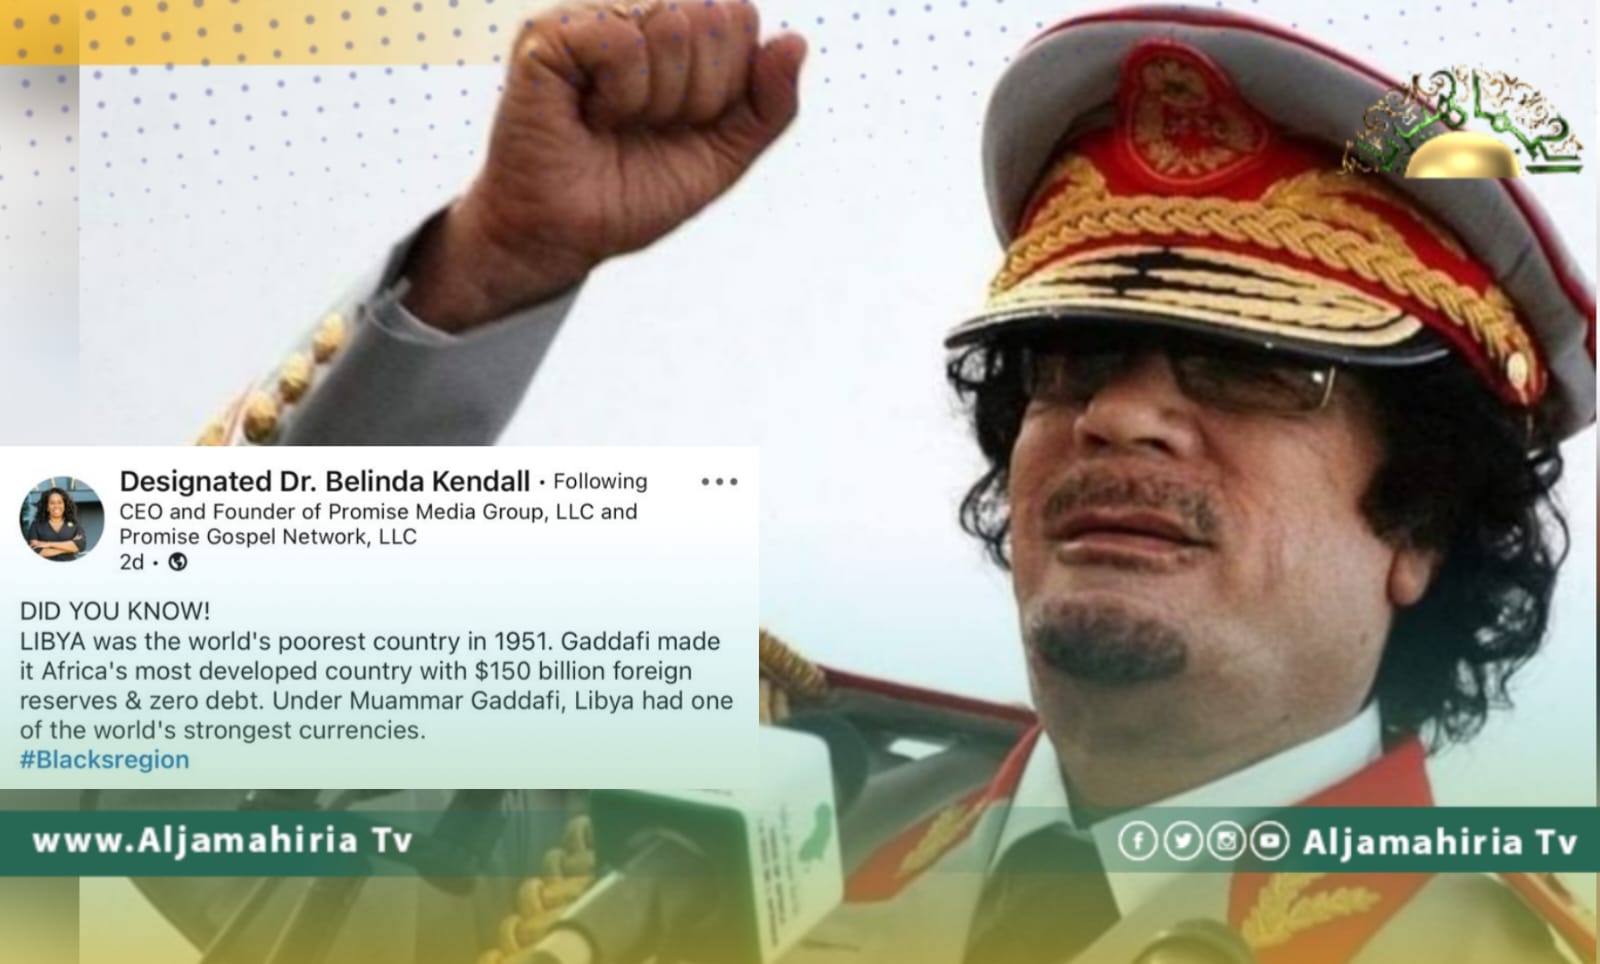 الصفحية الأمريكية بليندا كيندال: القذافي جعل ليبيا الأكثر غنى في أفريقيا وعملتها الأقوى